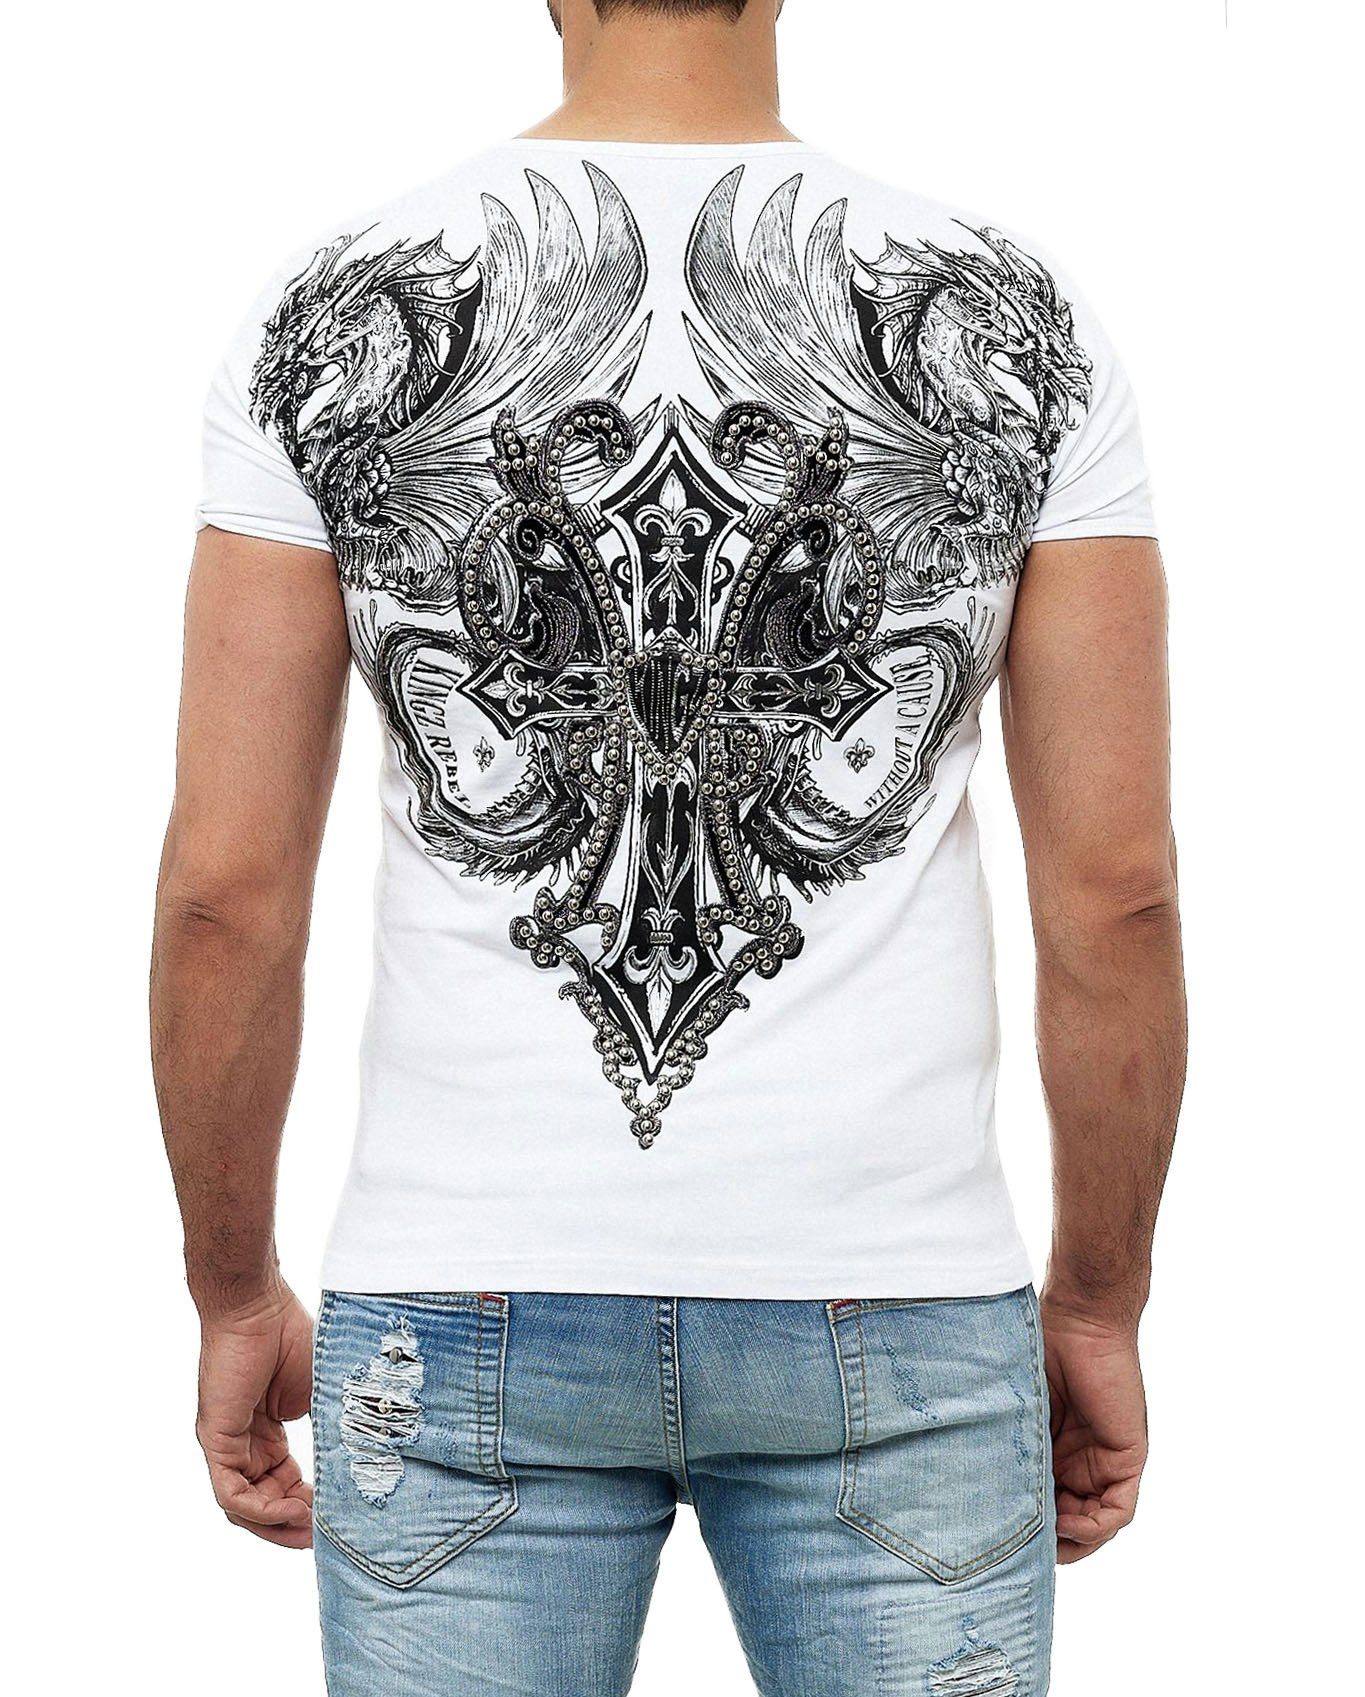 T-Shirt in KINGZ ausgefallenem Design weiß-silberfarben